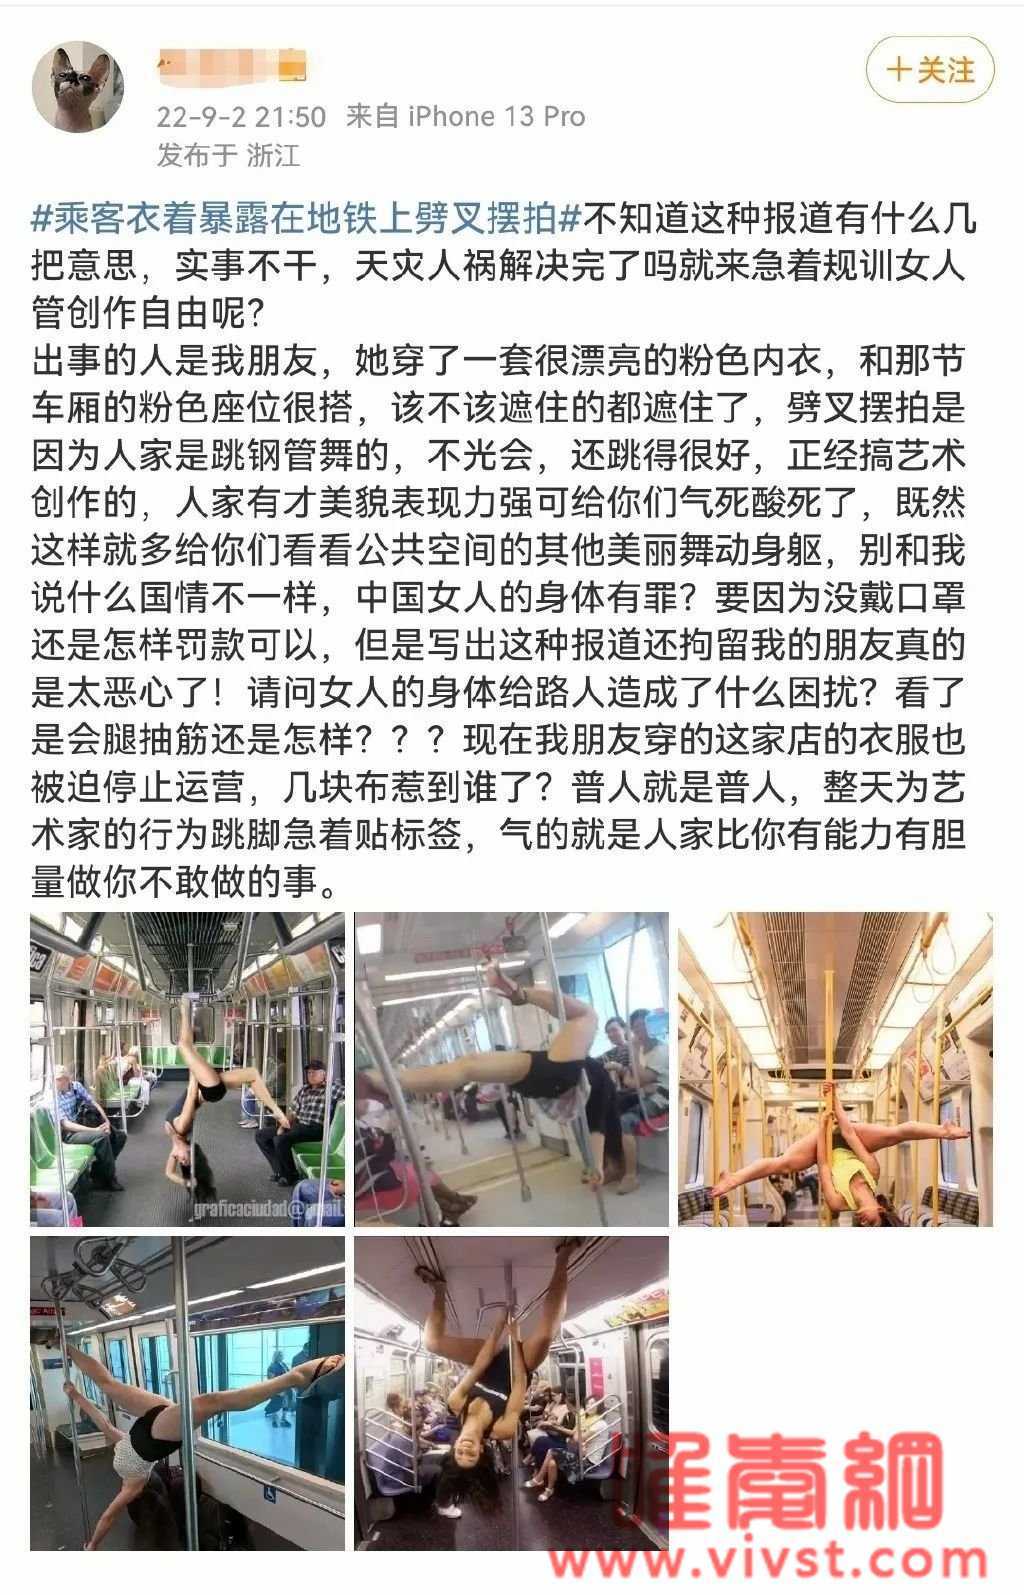 上海地铁惊现女网红穿内衣拍照,网友热评:"任务"挑战终于有人抓了!